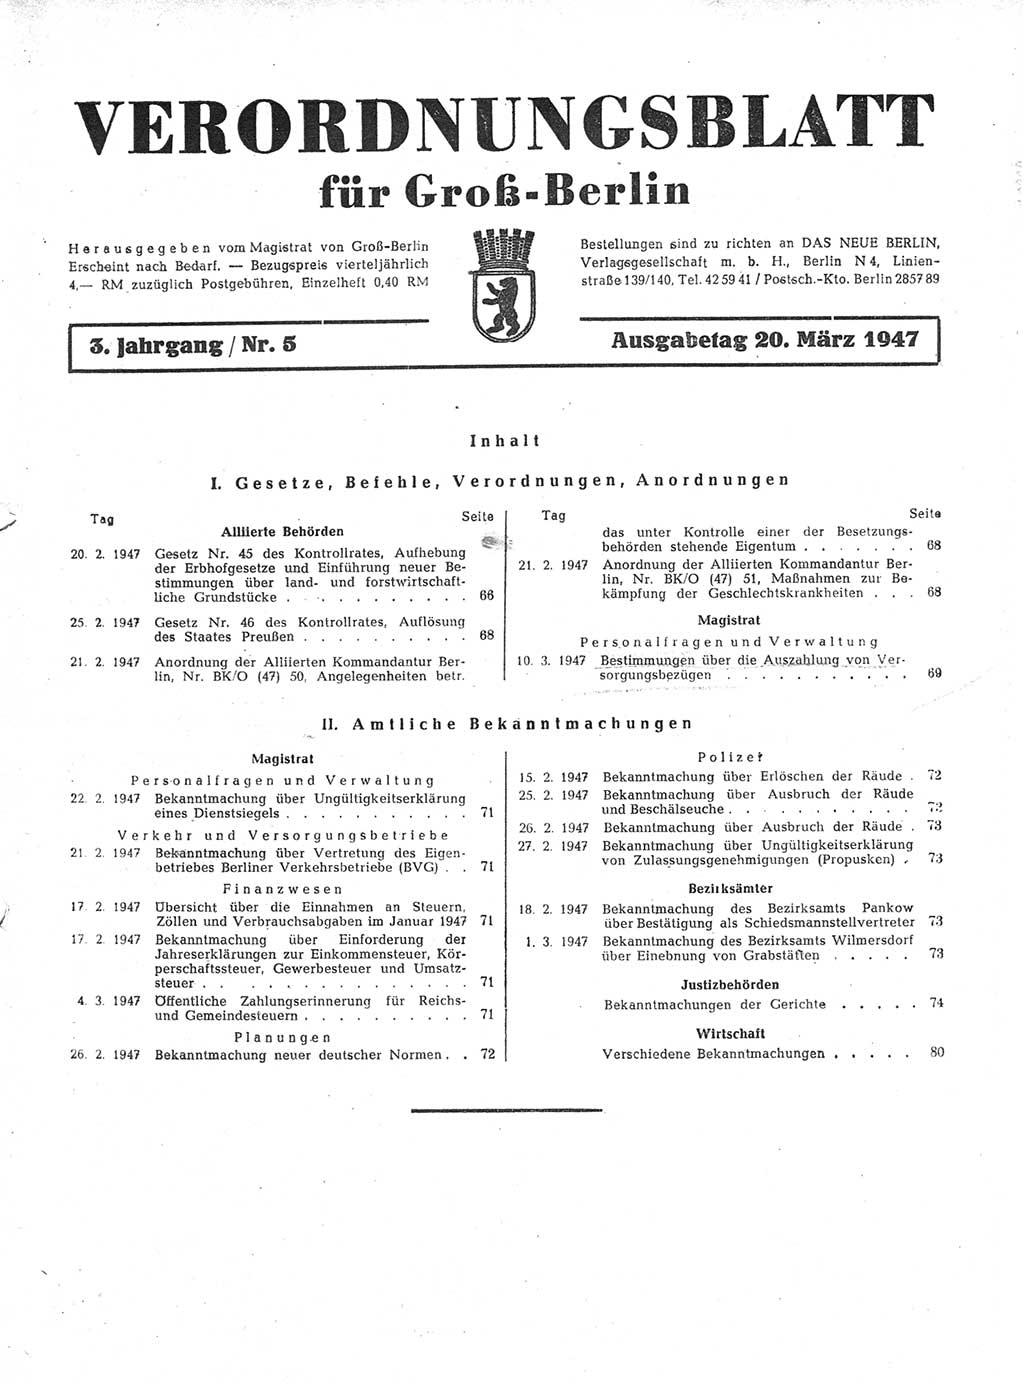 Verordnungsblatt (VOBl.) für Groß-Berlin 1947, Seite 65 (VOBl. Bln. 1947, S. 65)